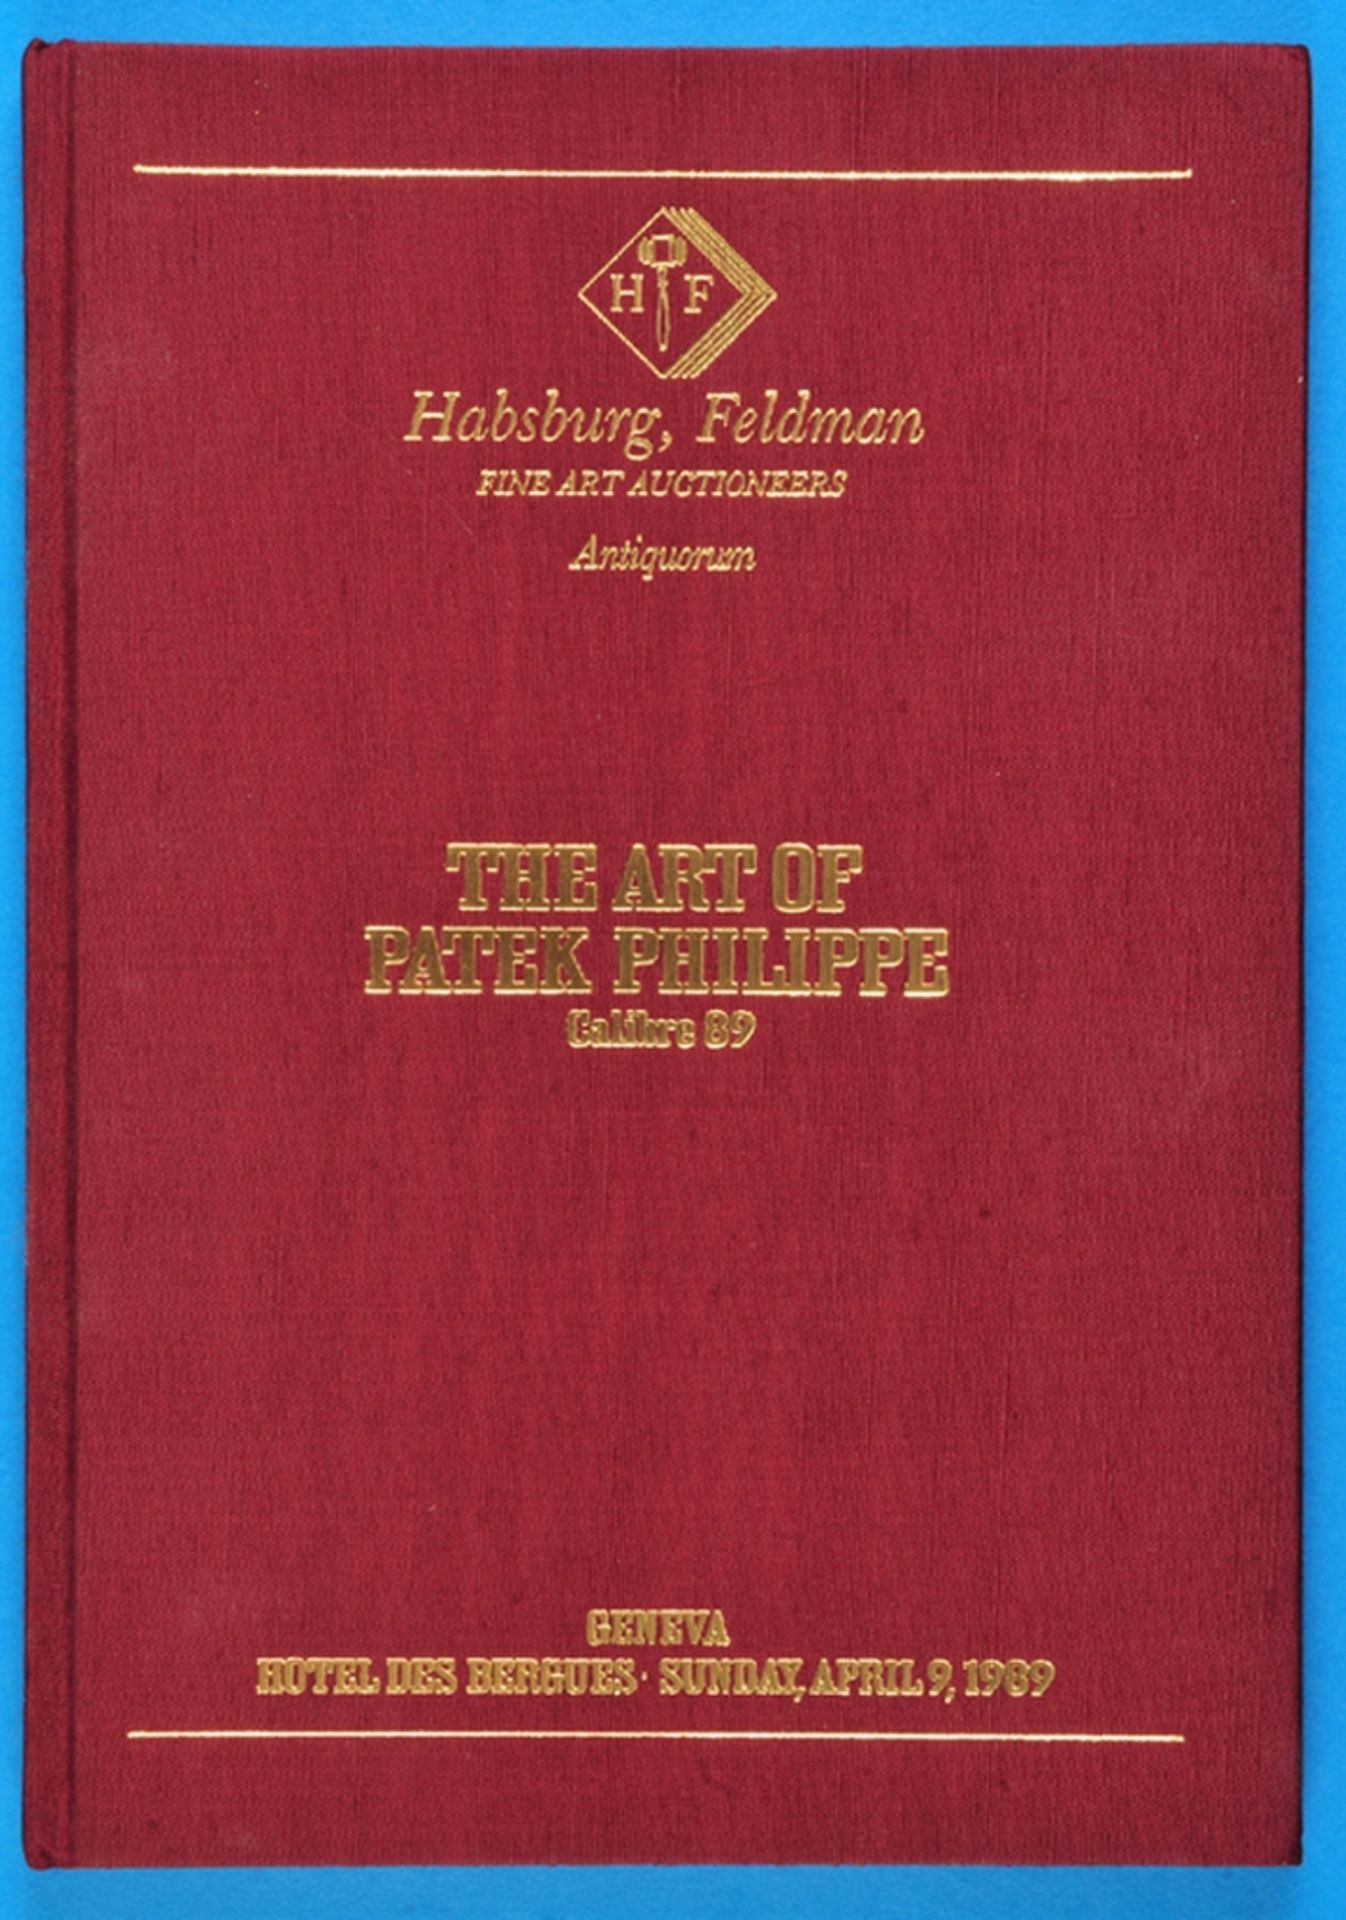 Antiquorum, The Art of Patek Philippe, Calibre 89, Katalog von 1989